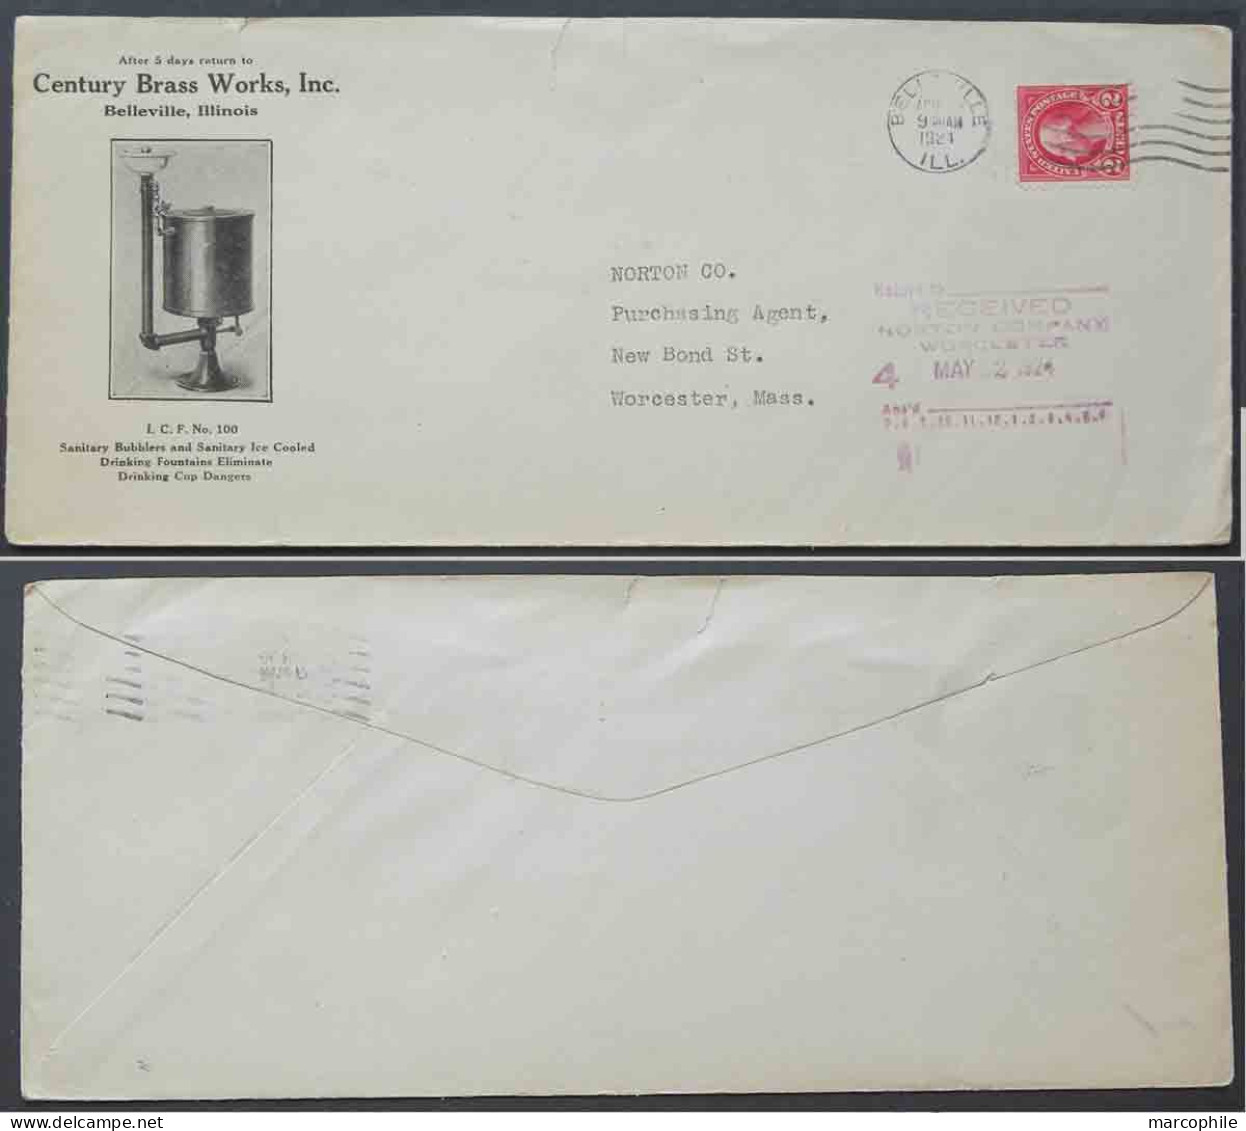 EAU - FONTAINE - LAITON / 1924 USA - BELLEVILLE ENVELOPPE COMMERCIALE ILLUSTREE (ref 4195) - Water